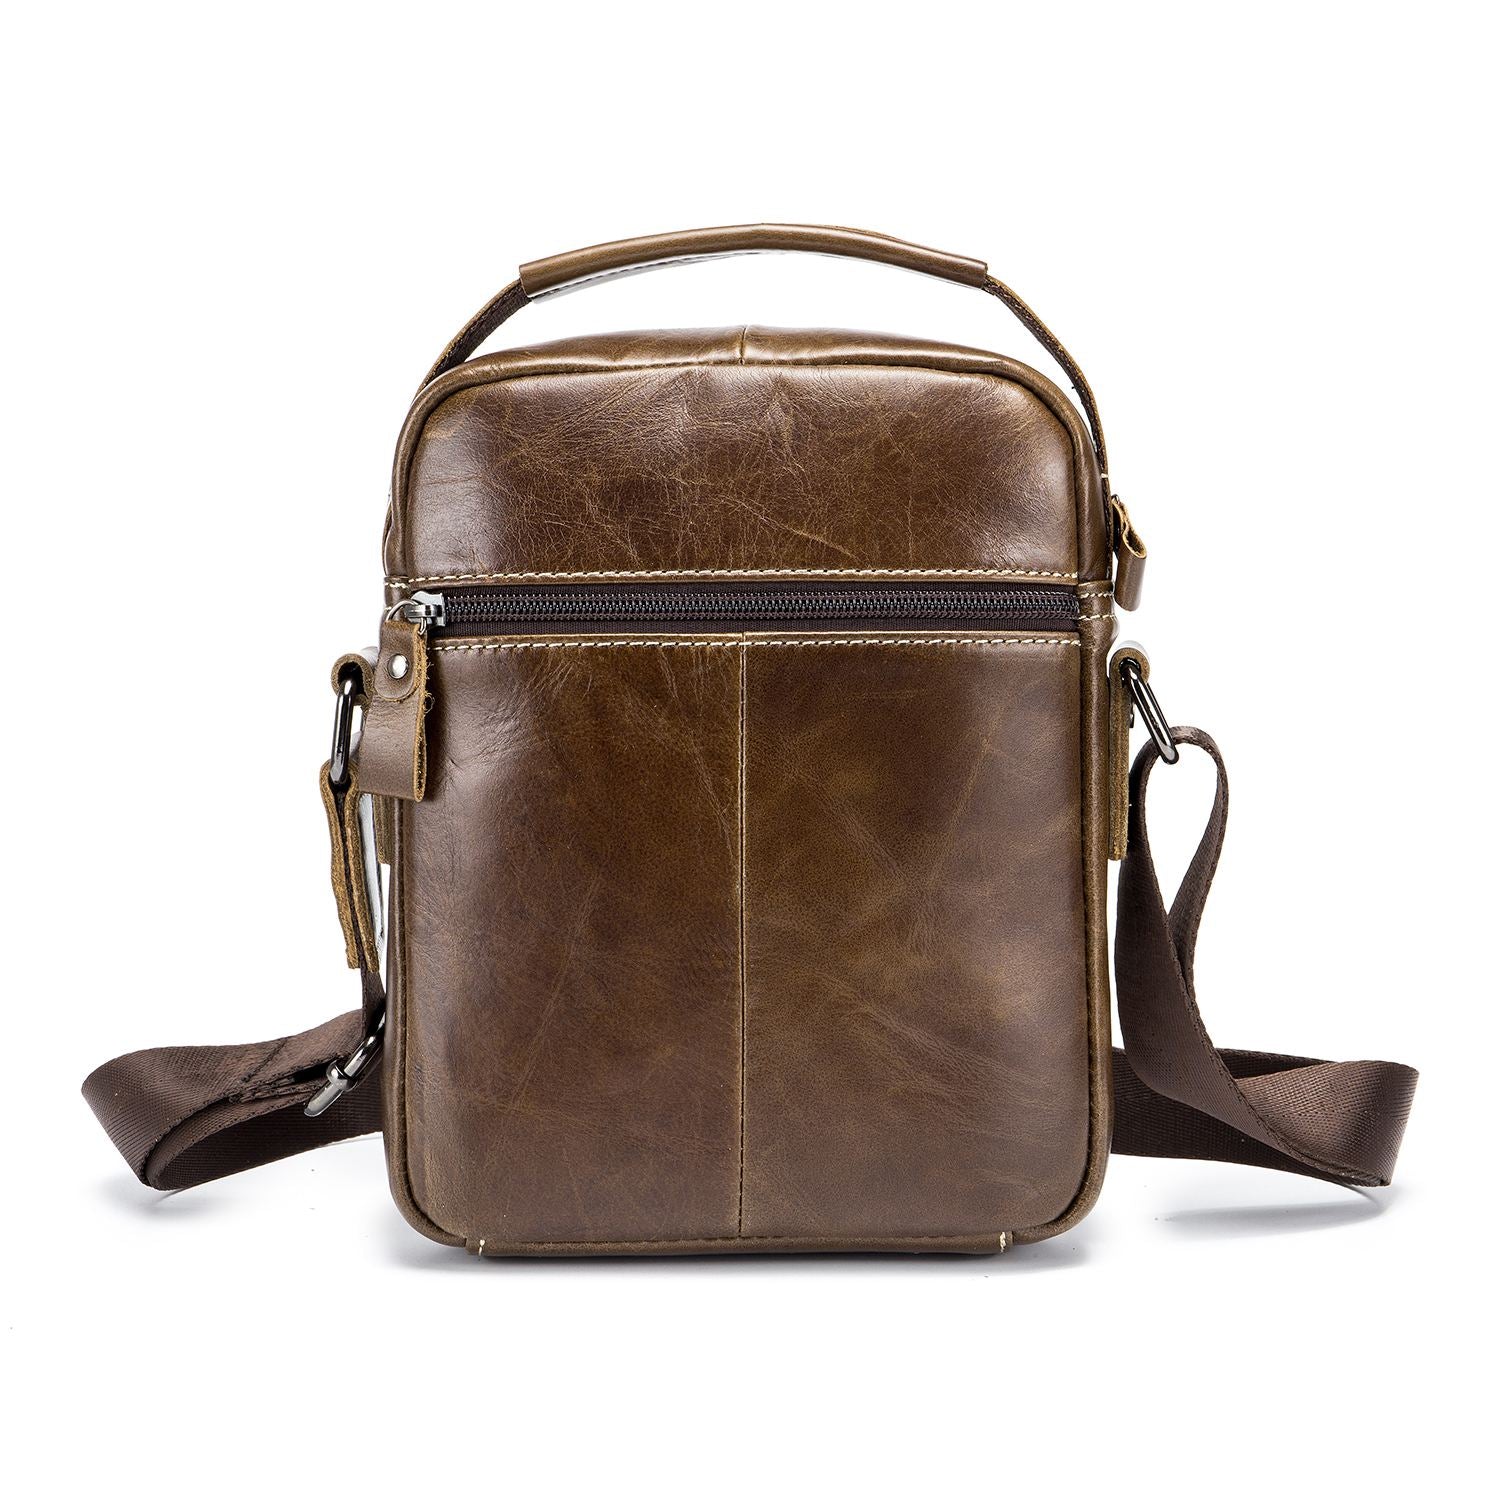 2 Color Bullcaptain Classic Brand Genuine Leather Business Messenger Bag Vintage Crossbody Bag For Men Casual Shoulder Bag - ebowsos